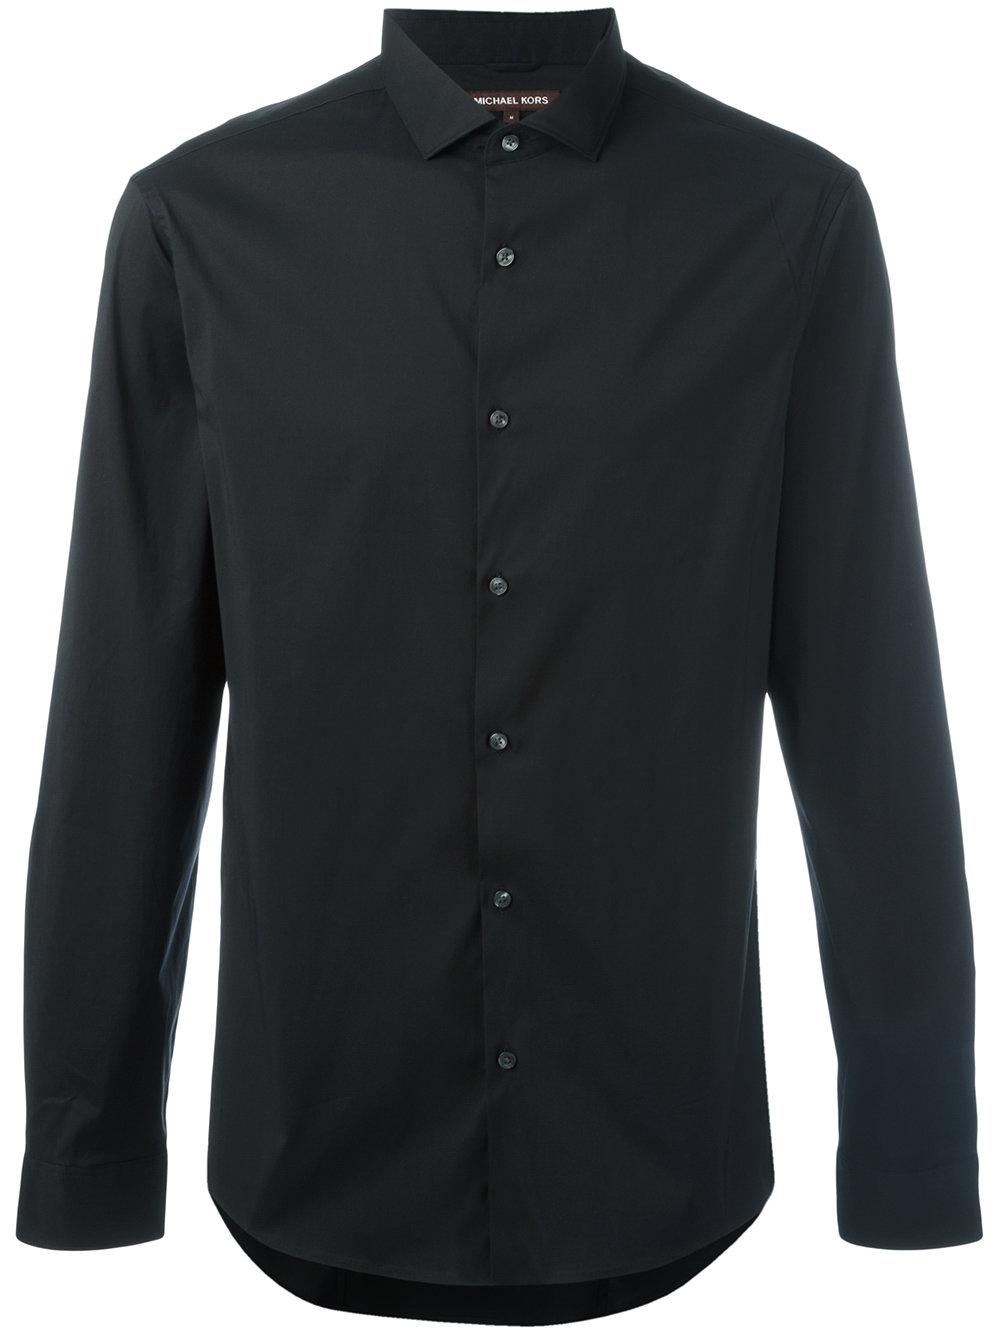 Michael michael kors Long-sleeve Shirt in Black for Men | Lyst